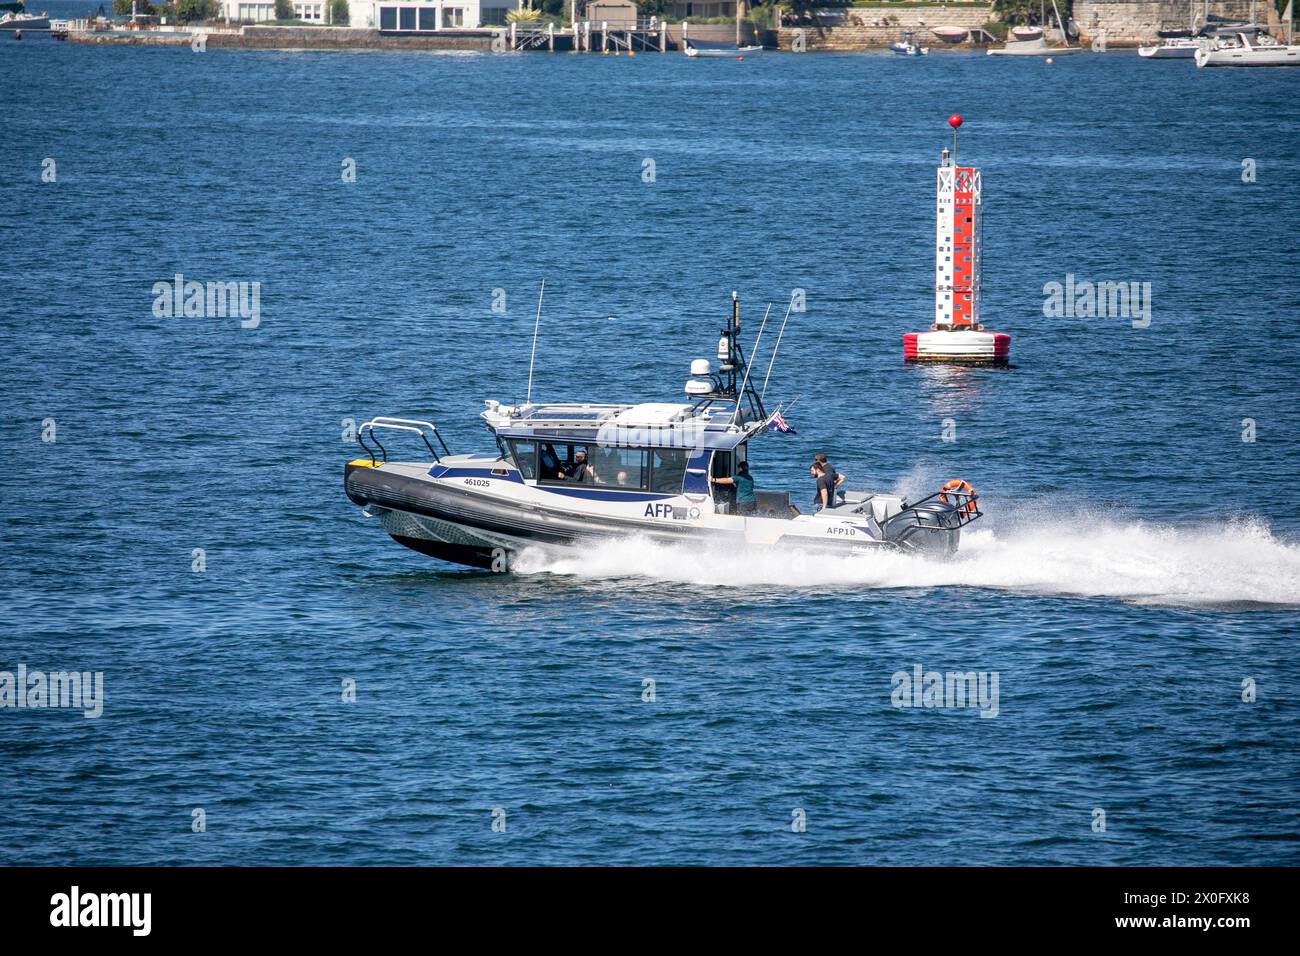 Australische Bundespolizei, australiens Bundespolizei, mit ihrem Hochgeschwindigkeits-RIB-Boot AFP 10 im Hafen von Sydney, das von Yamba gebaut wurde Stockfoto